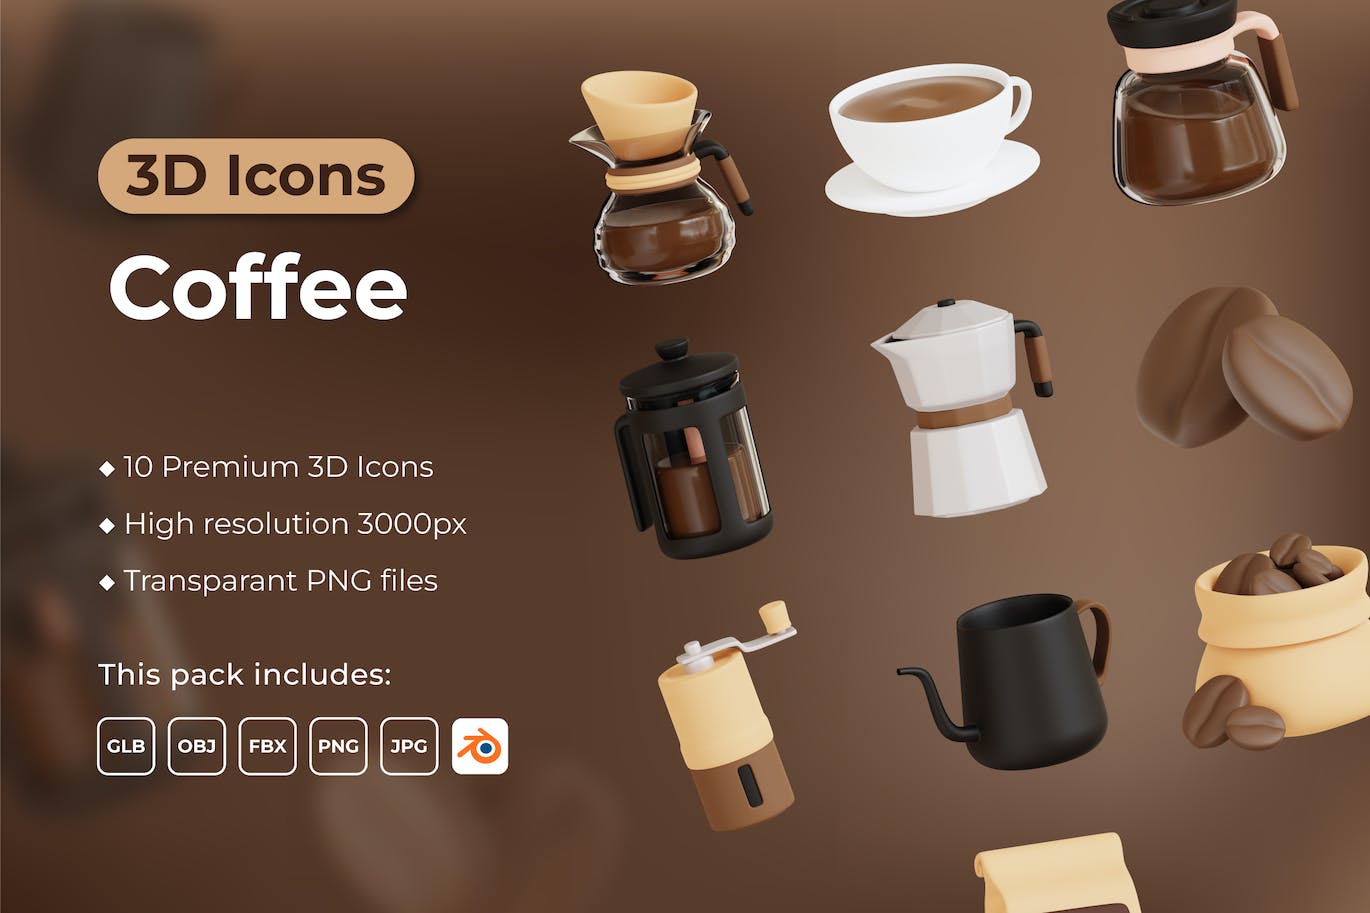 咖啡 3D 图标 (PNG,FBX,OBJ)